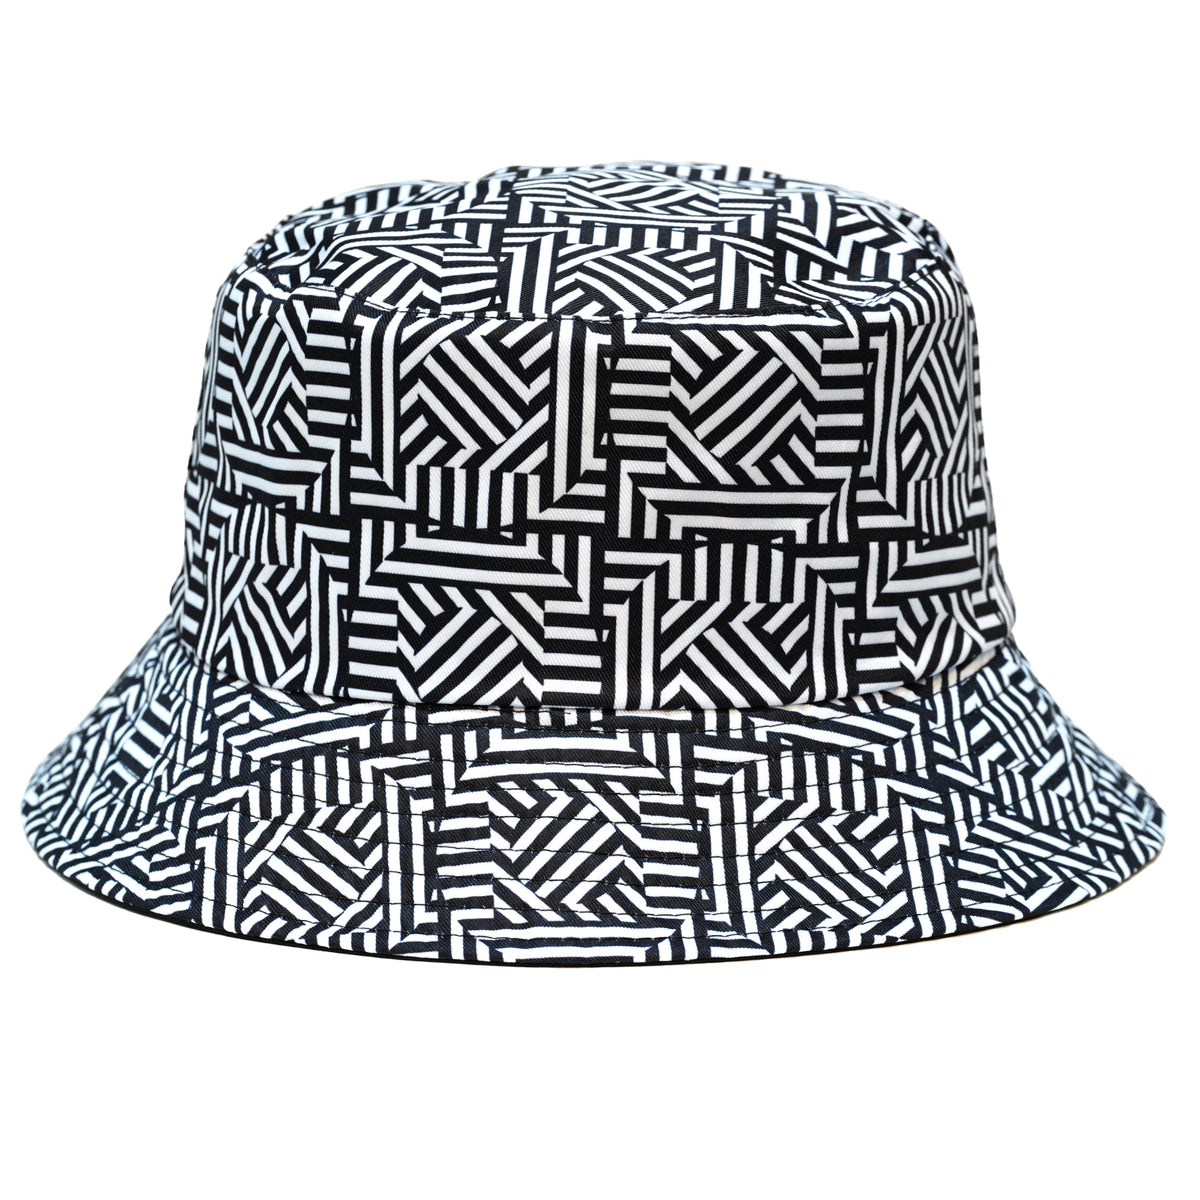 Rave Bucket Hat for Women & Men - Black & White Checkered